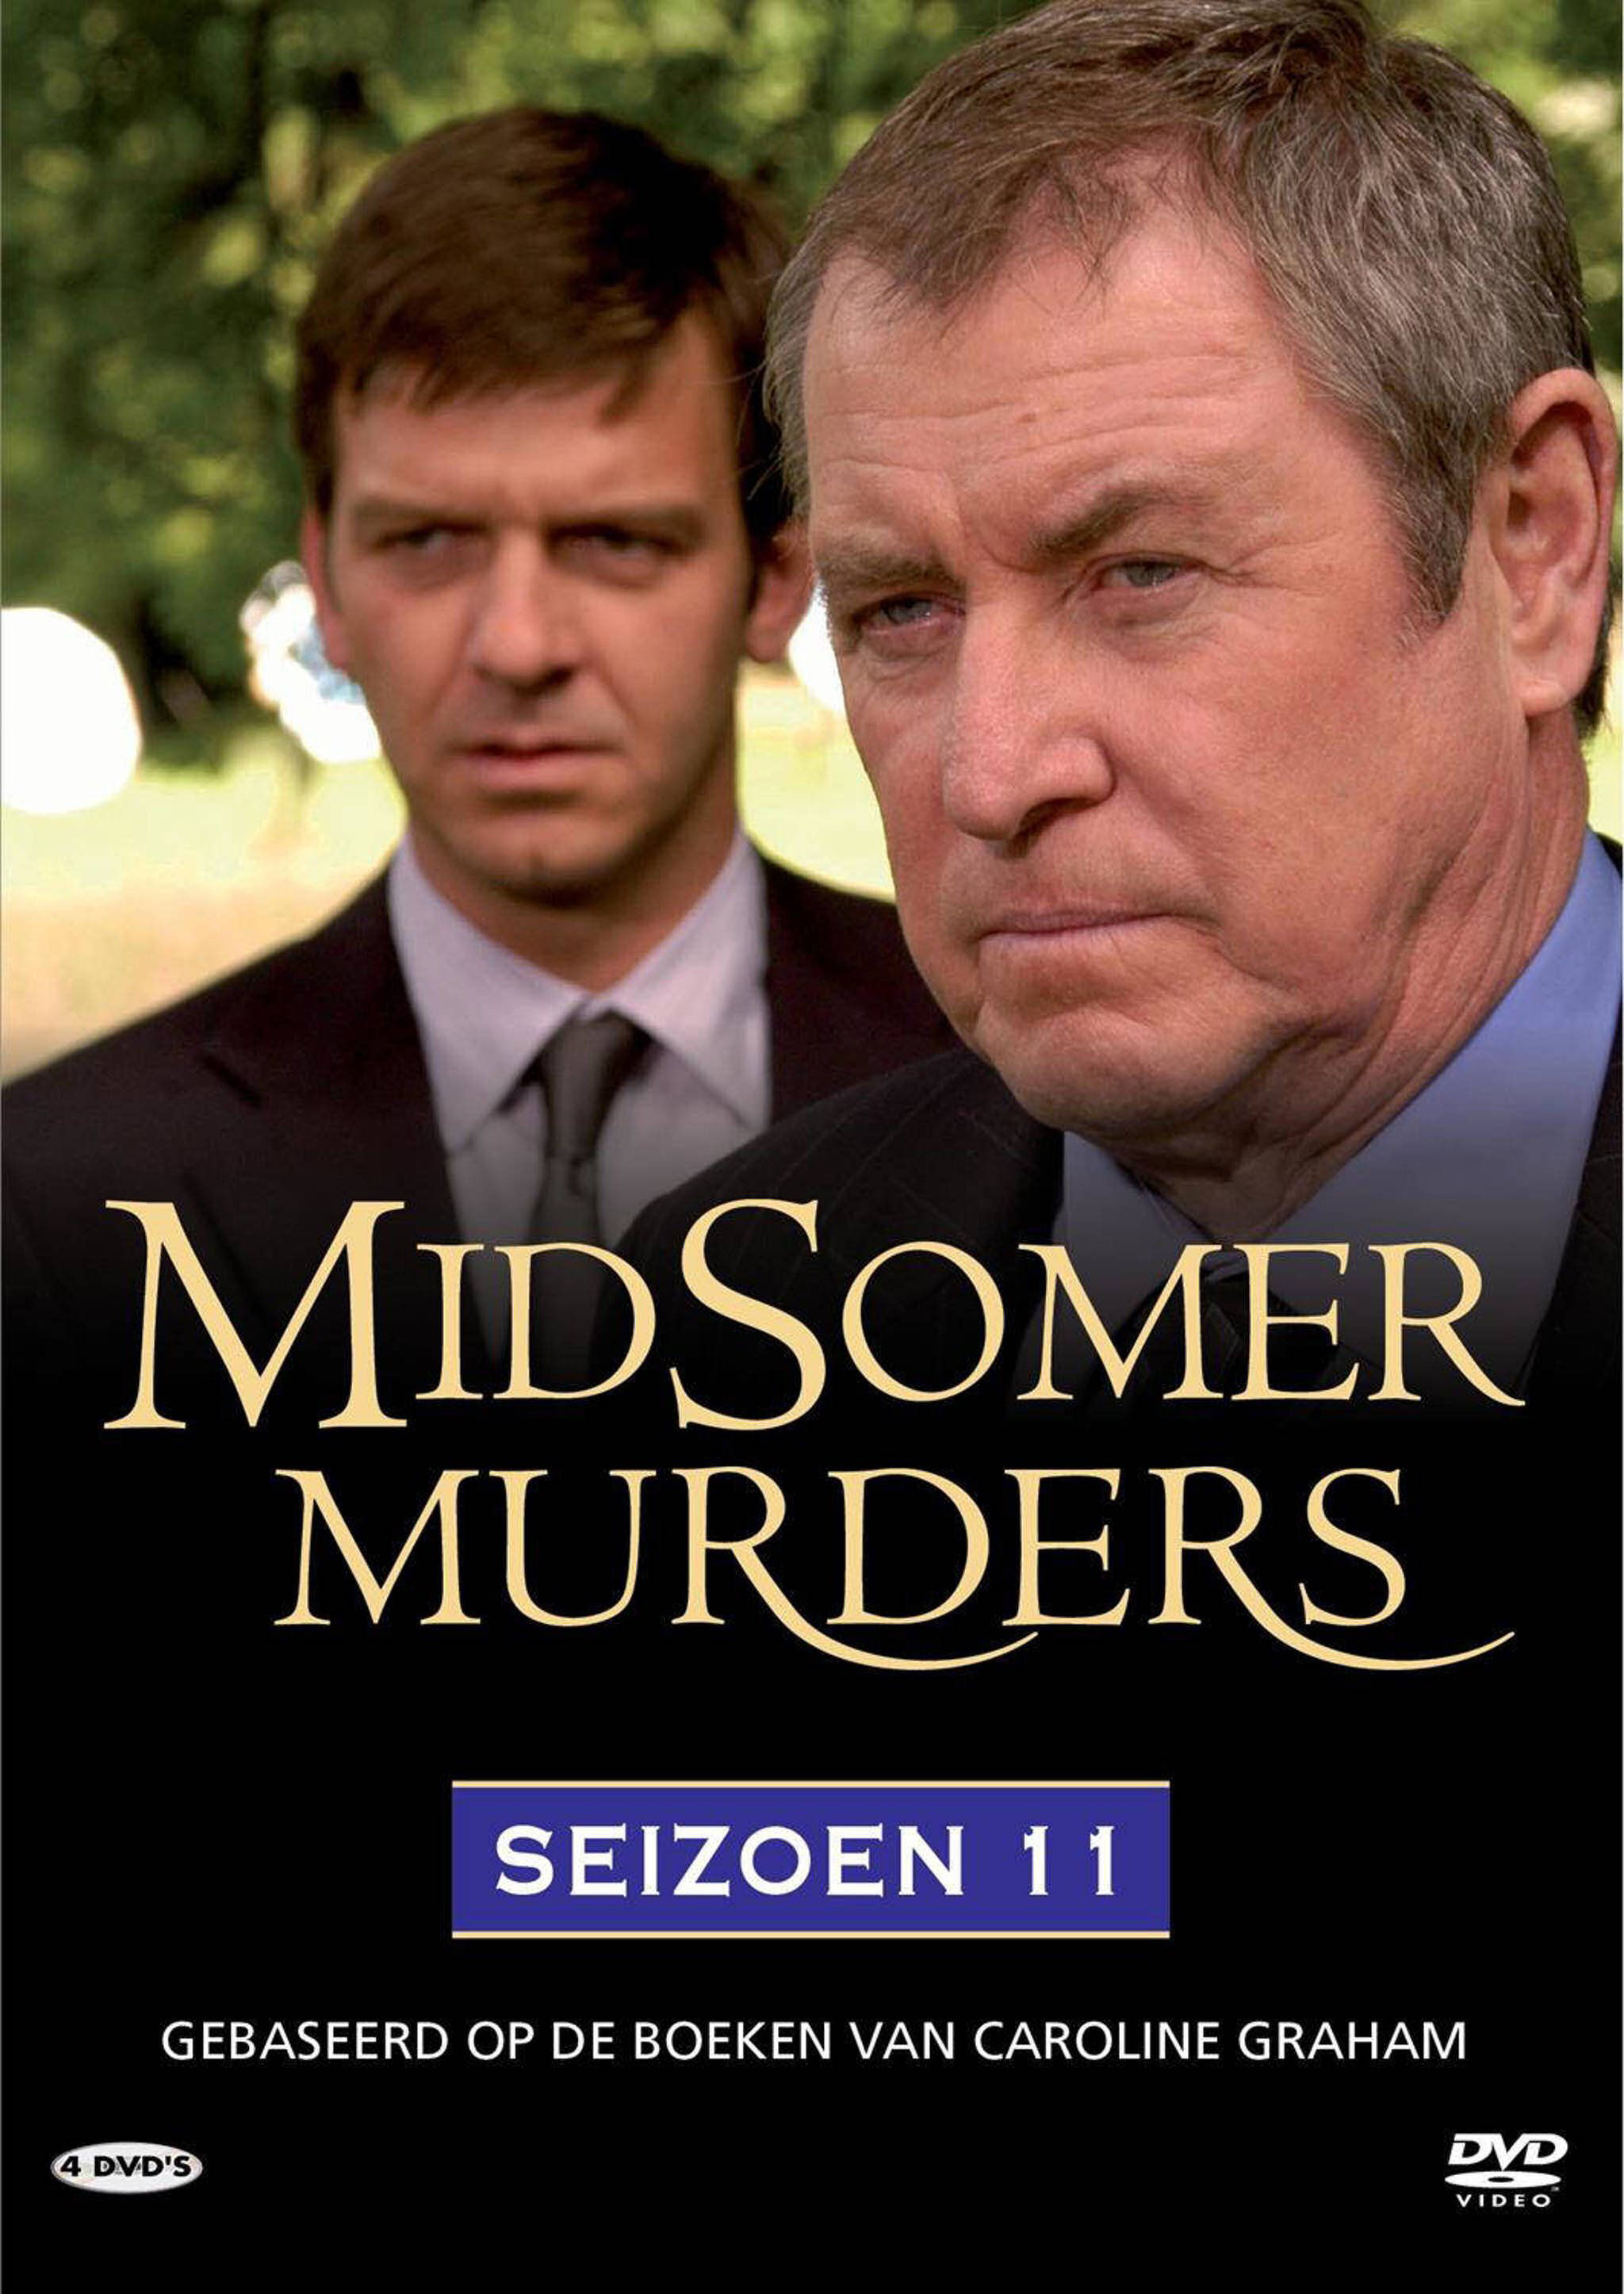 Midsomer Murders Seizoen 11 - DvD 6